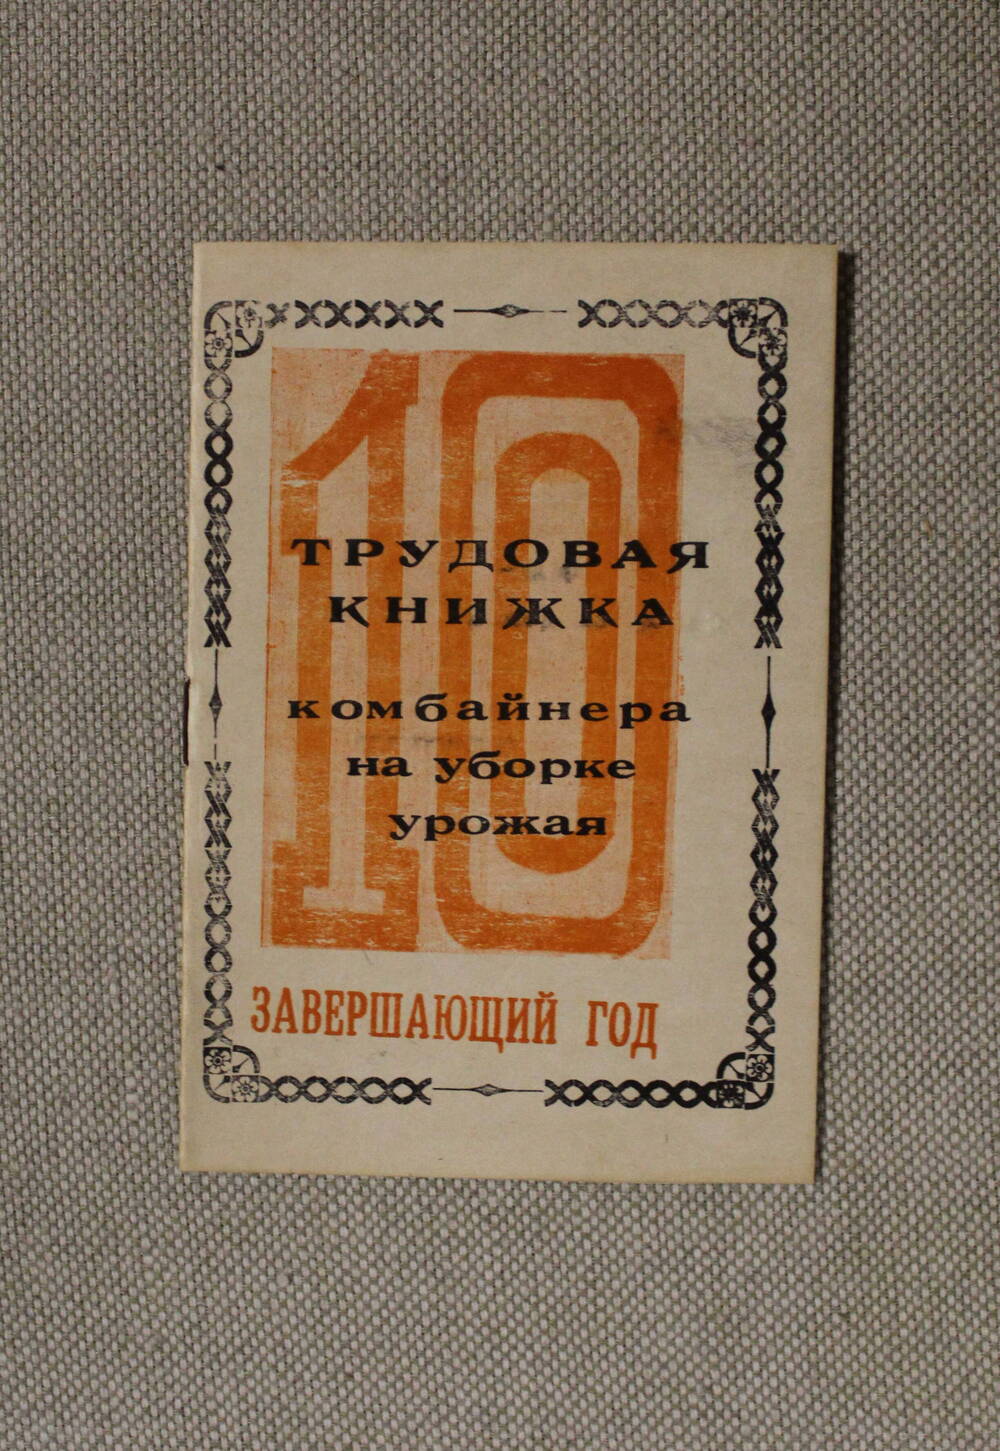 Книжка трудовая комбайнера ГПЗ Советское руно Гридунова Николая Карповича на уборке урожая 1980 года.